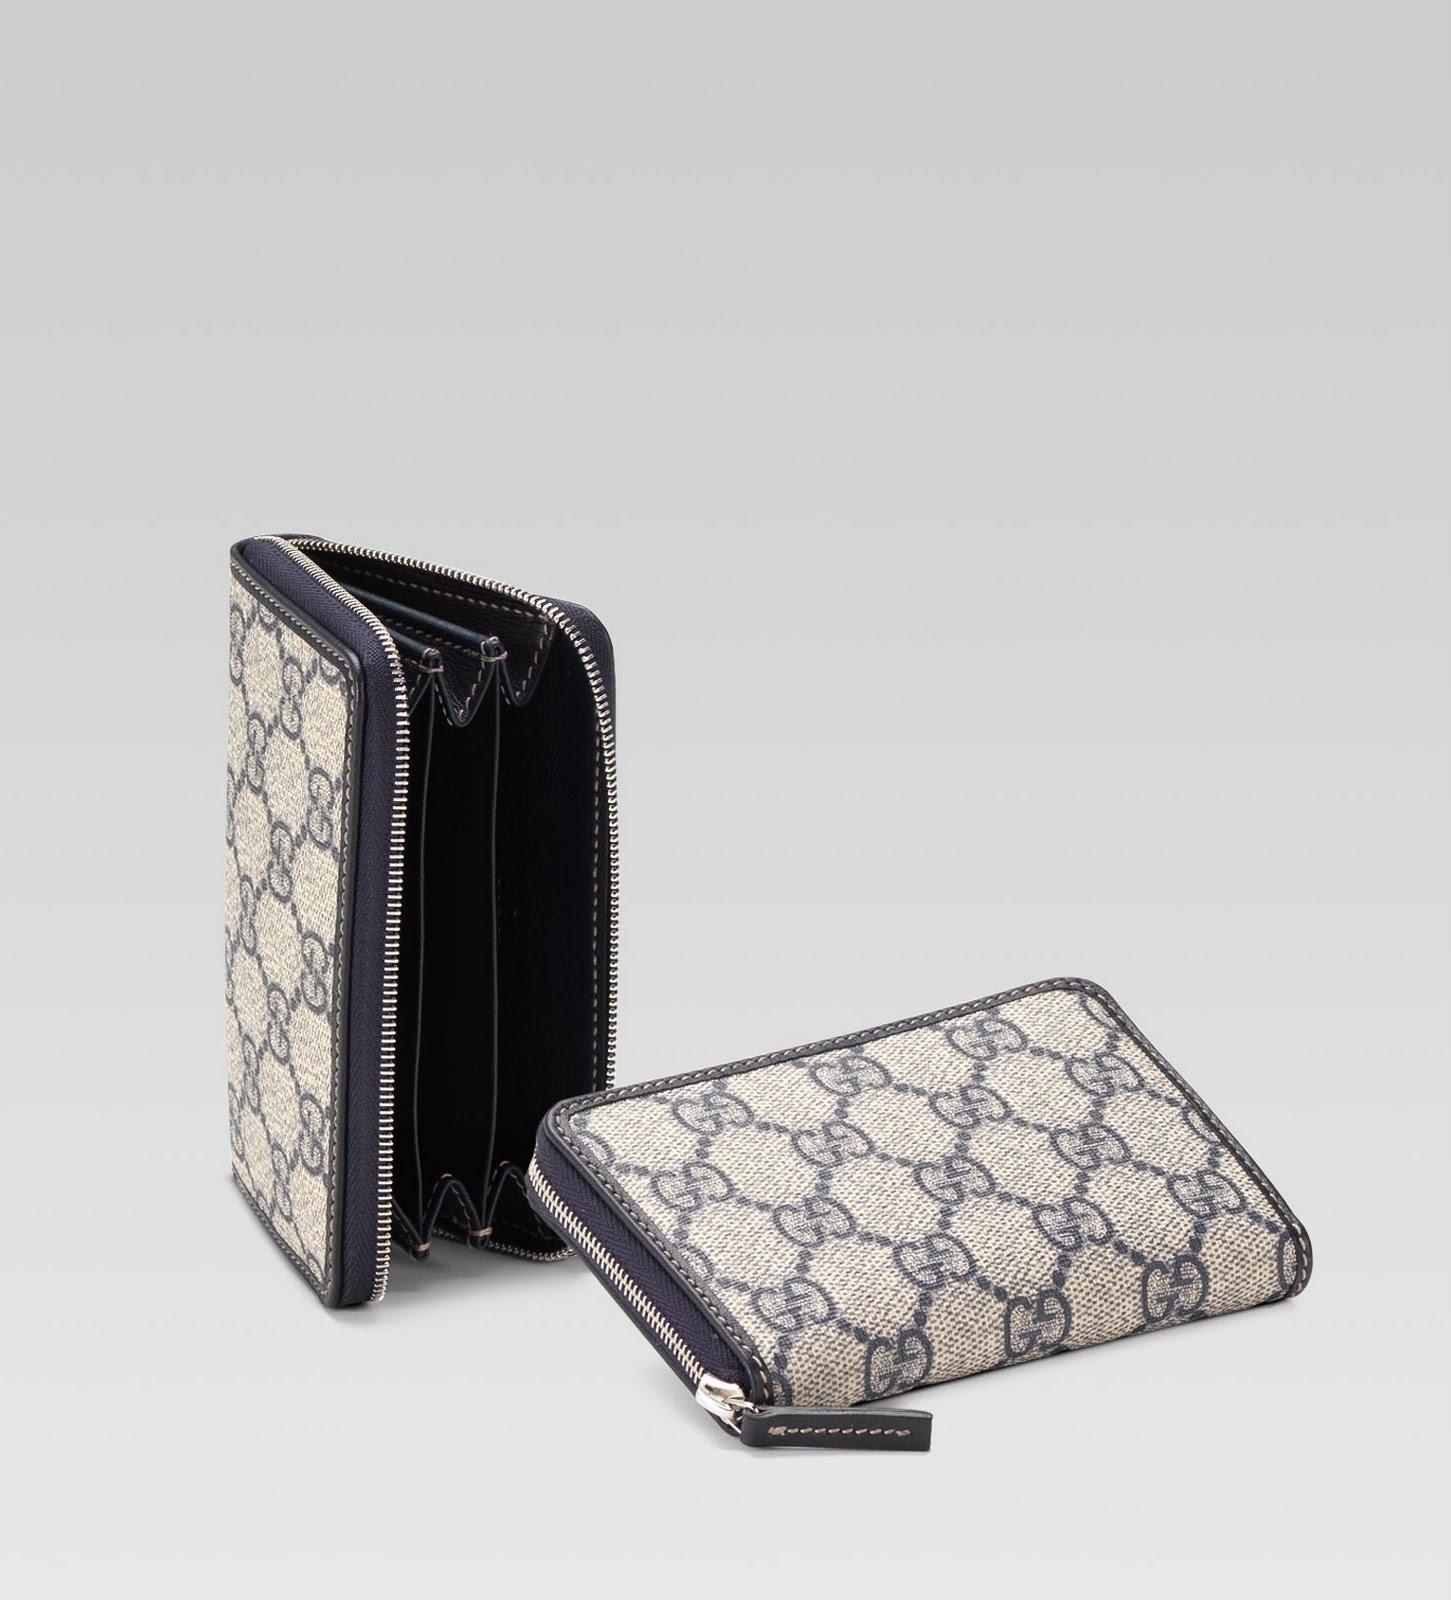 Fashion Hill: Gucci Classic continental purse collection